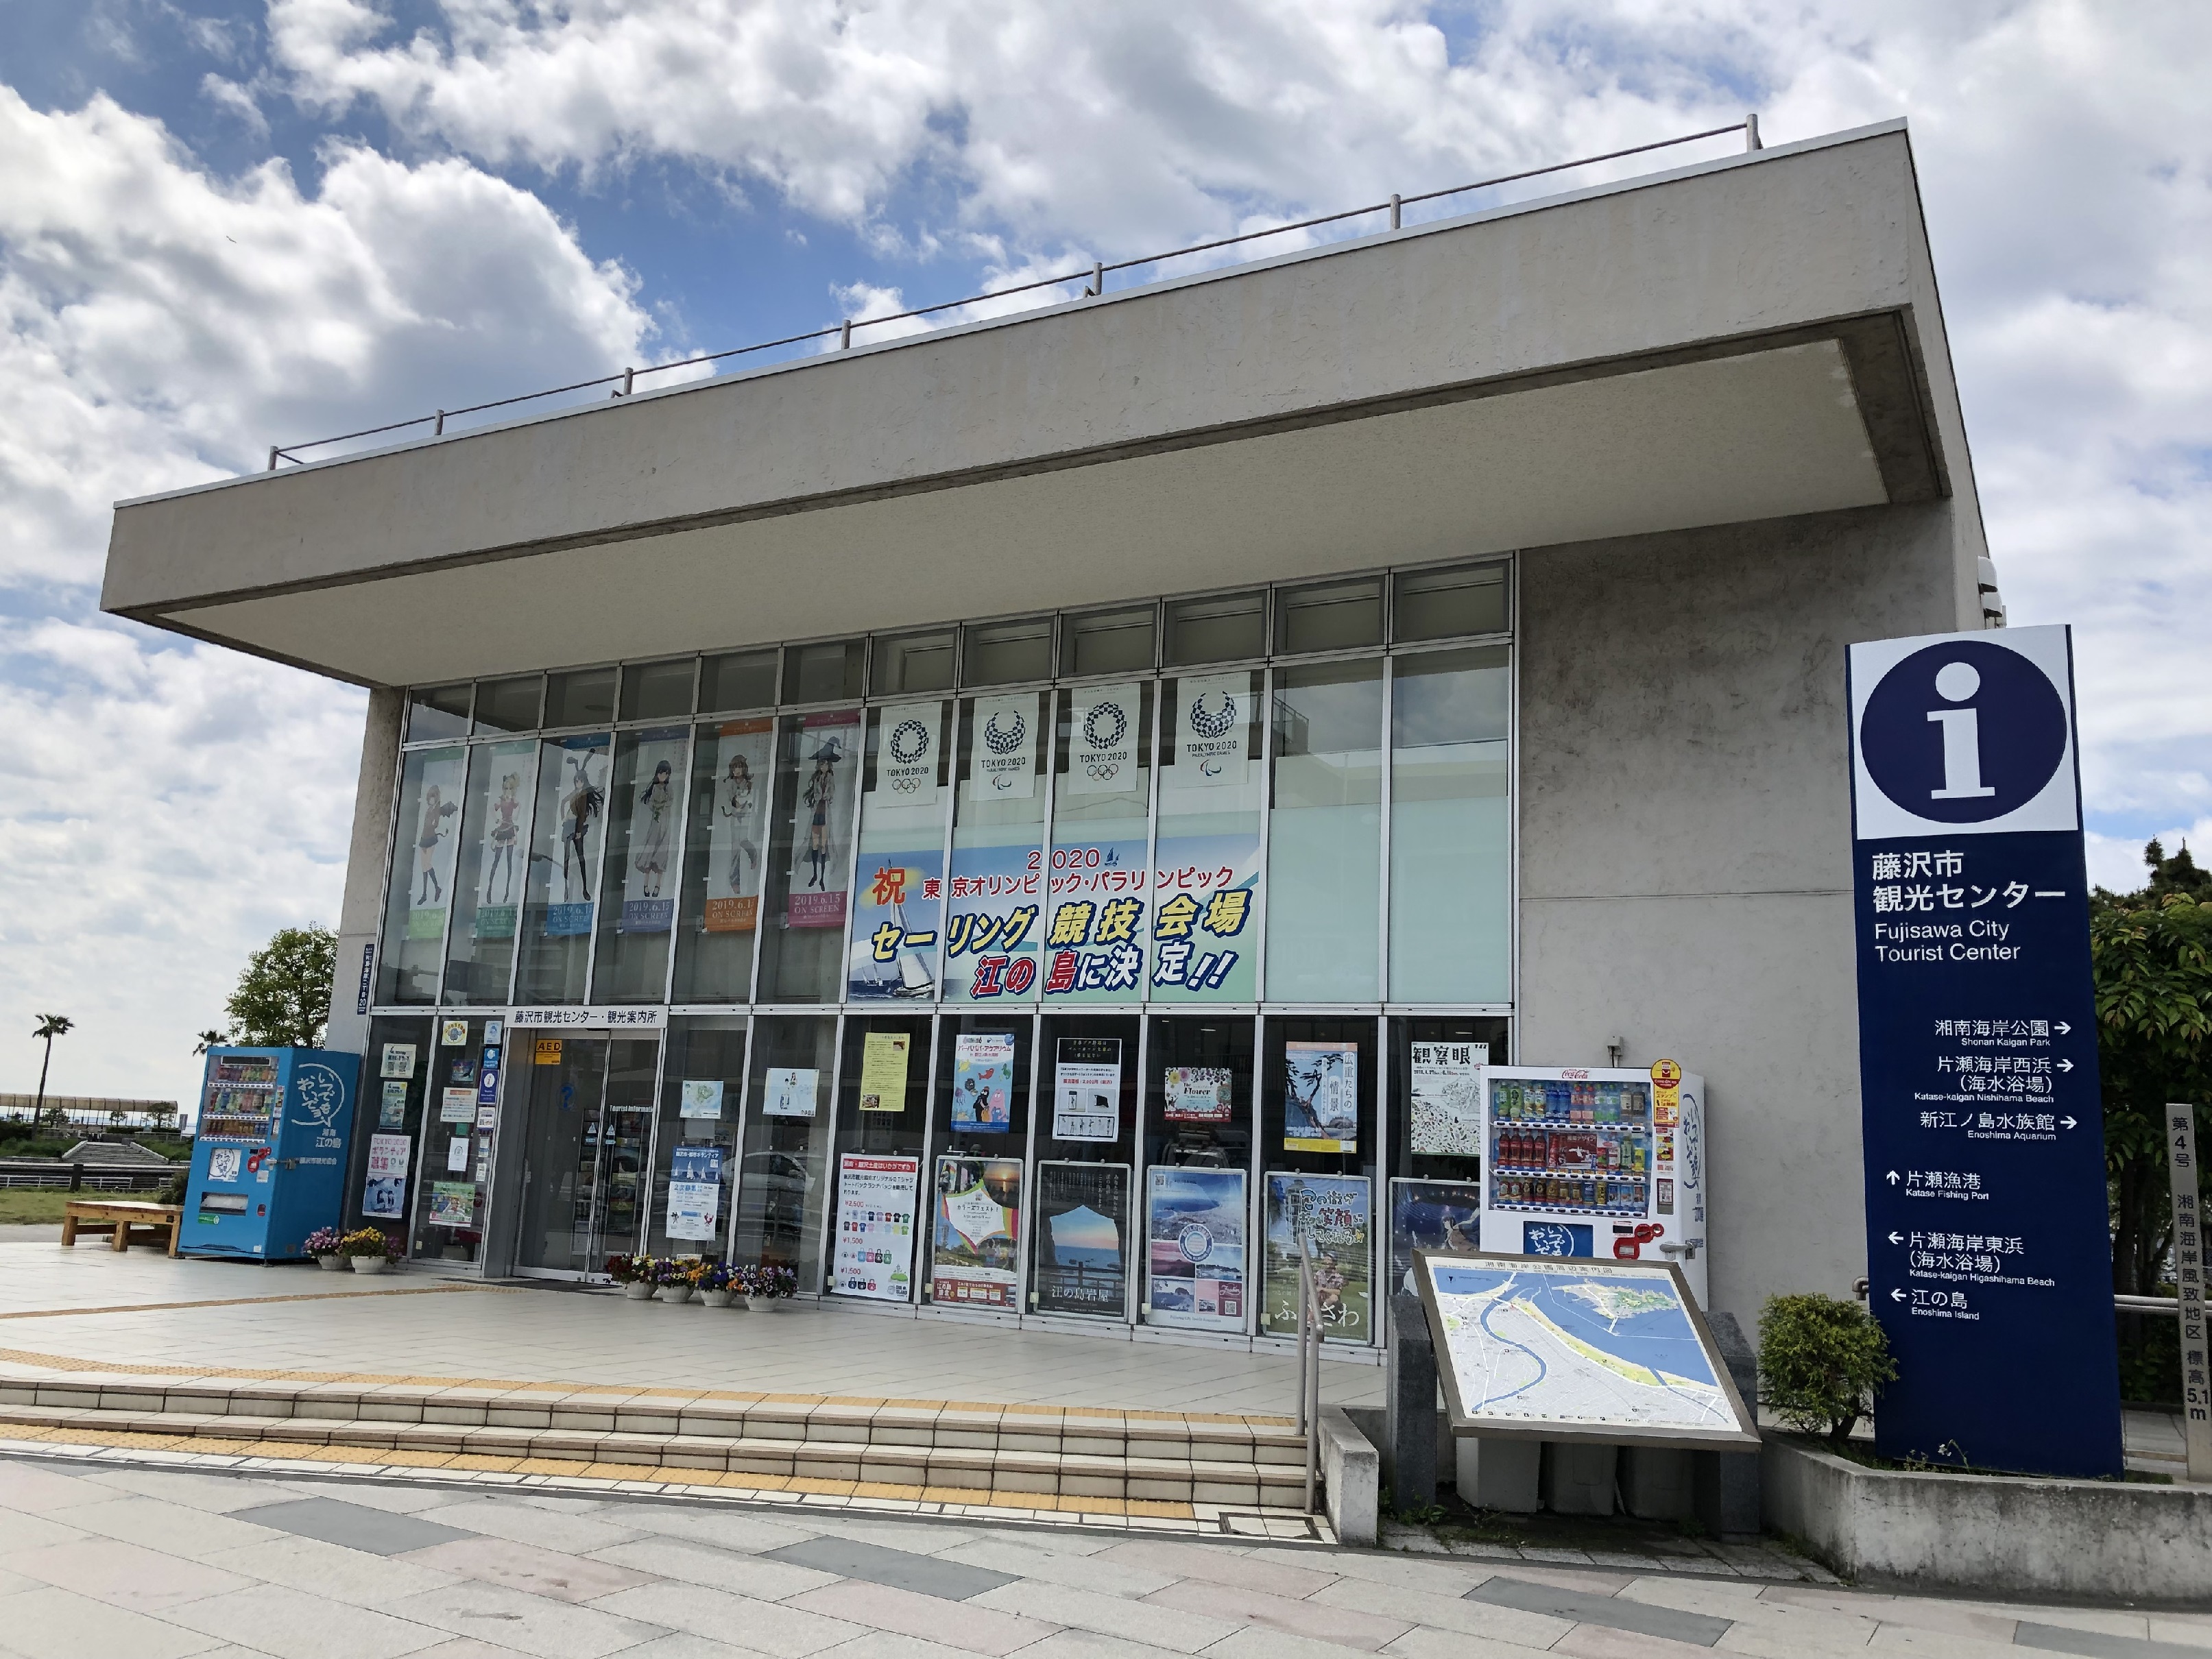 Centre de tourisme de Fujisawa